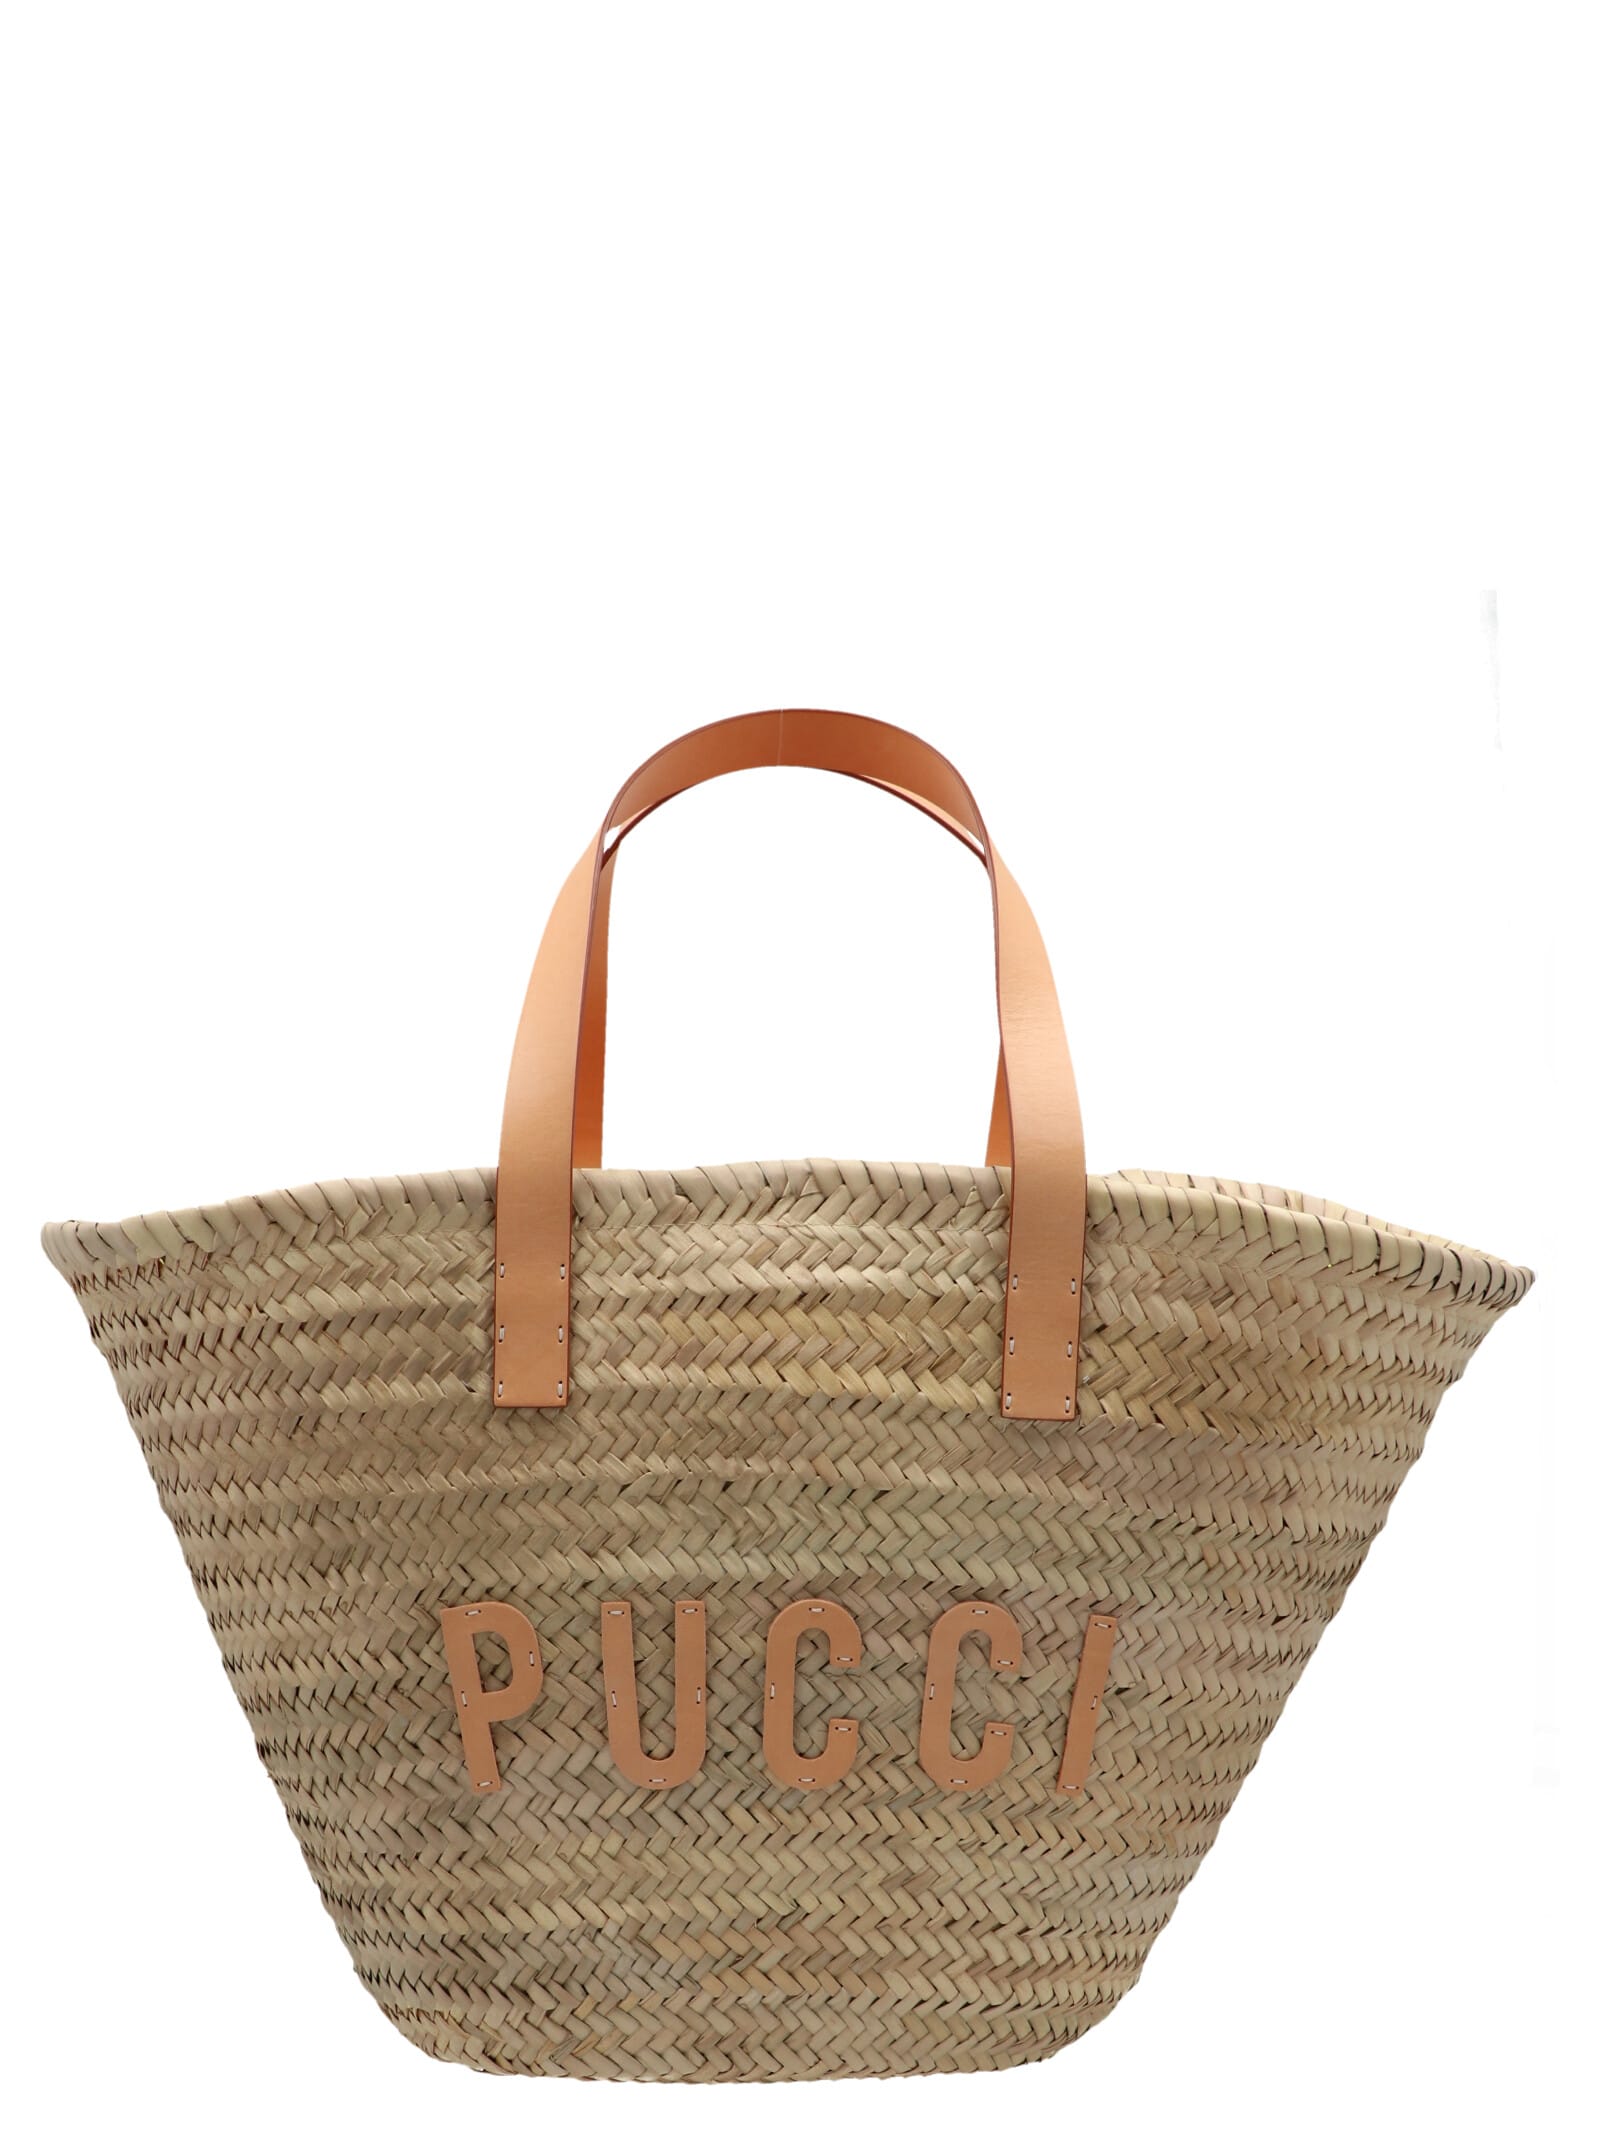 Emilio Pucci Straw And Twill Handbag